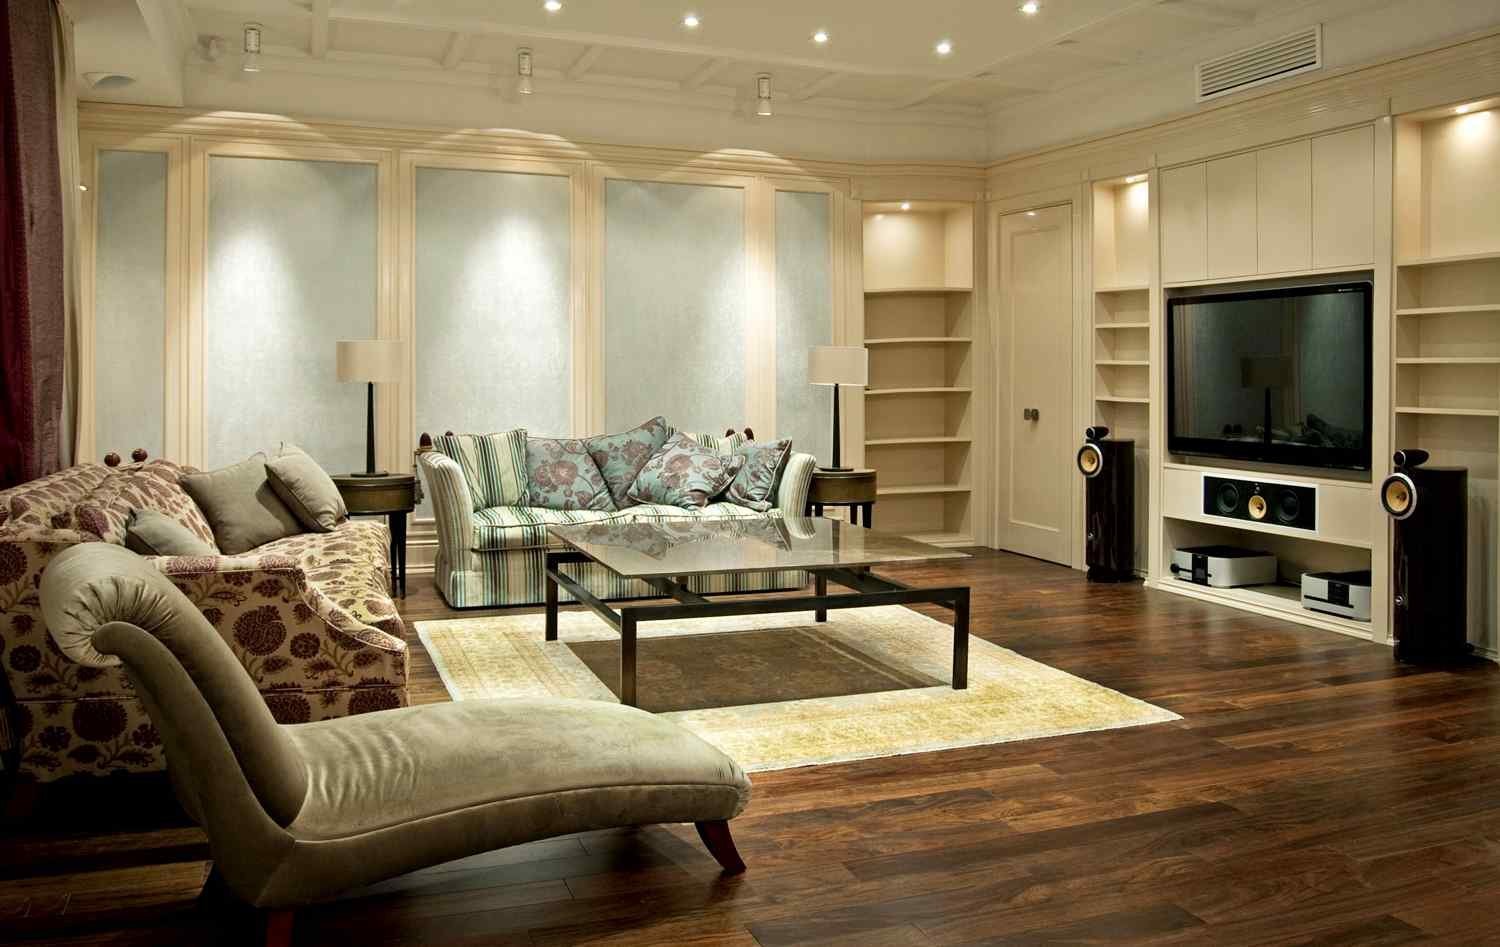 6 вариантов, как расставить мебель в зале или гостиной: законы композиции, правильная расстановка и варианты для разных стилей